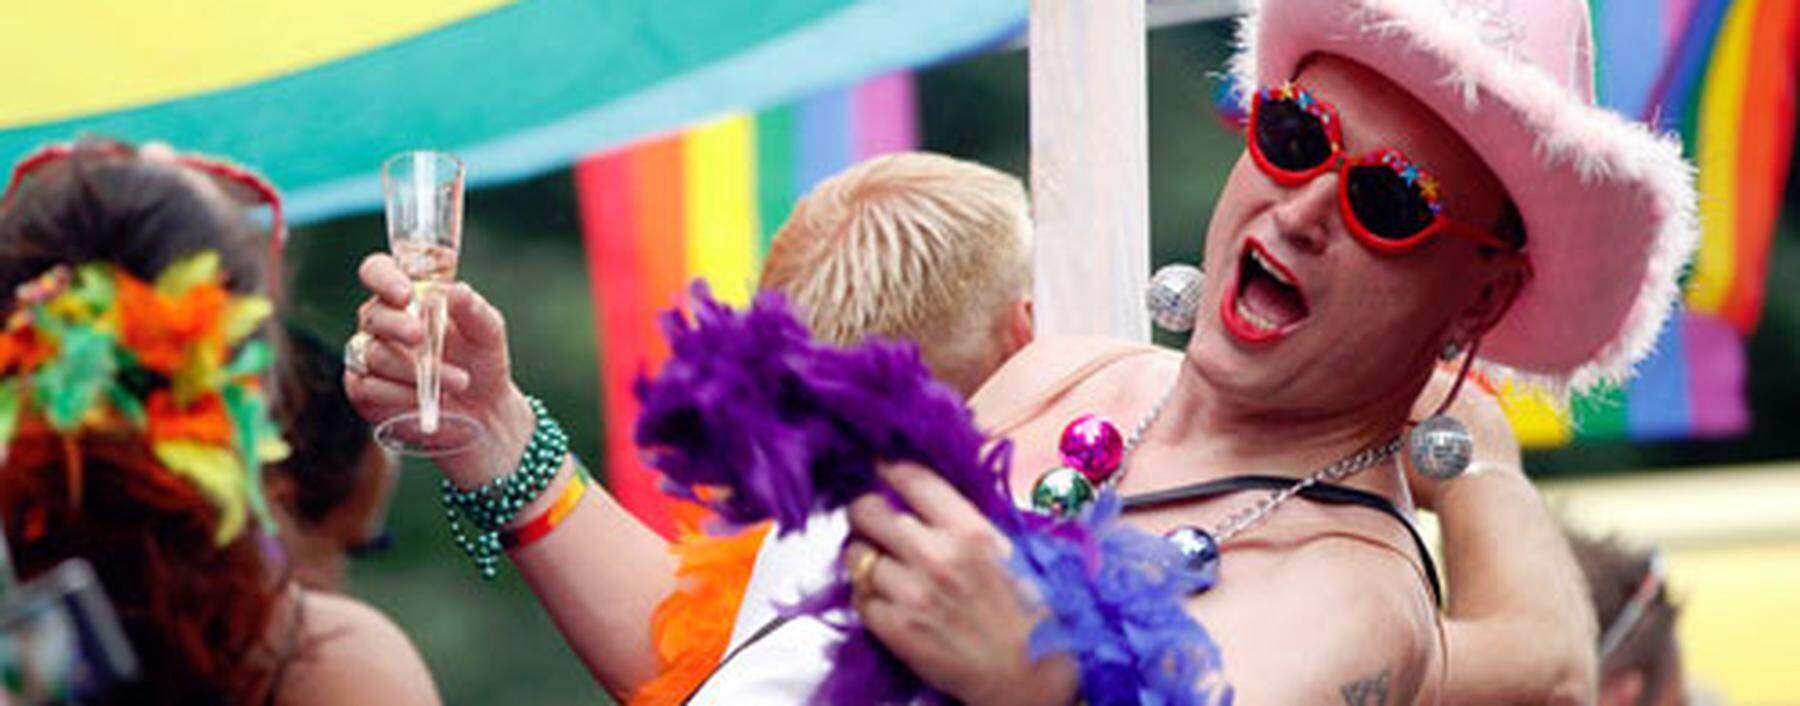 Regenbogenparade: Nackte Haut gegen Diskriminierung (c) APA (Georg Hochmuth)